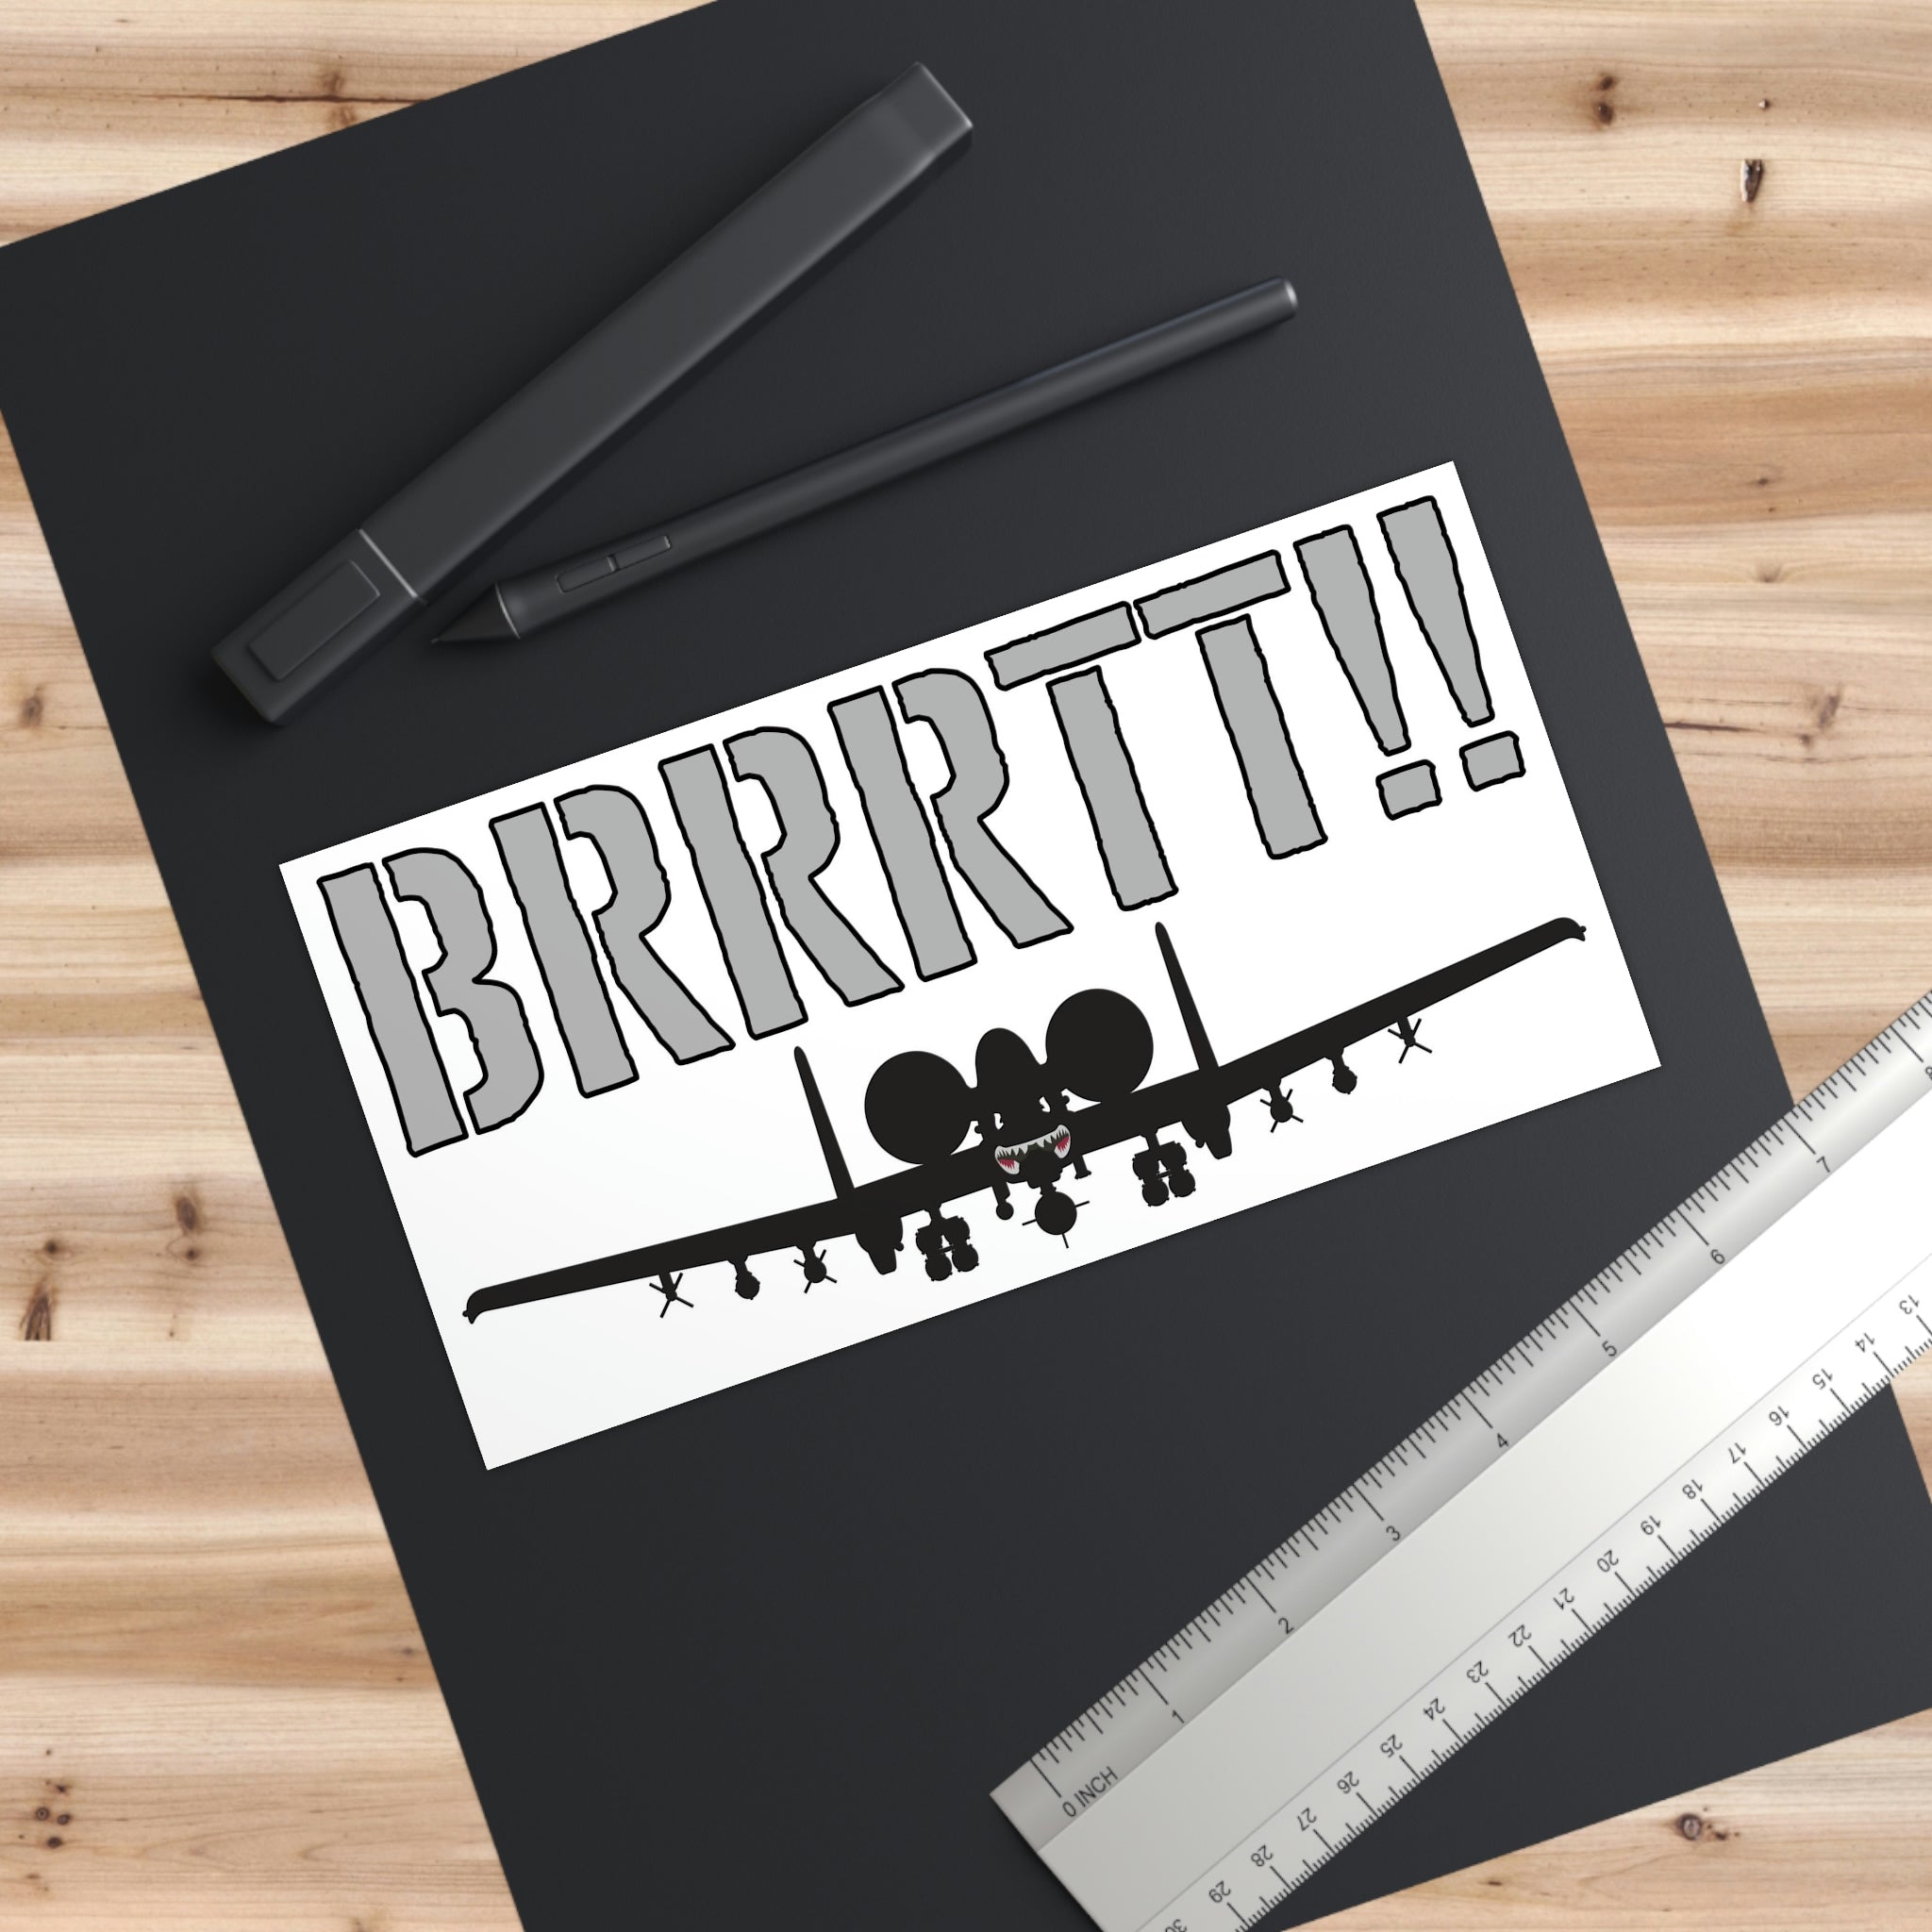 "BRRRTT!!" Bumper Stickers - I Love a Hangar